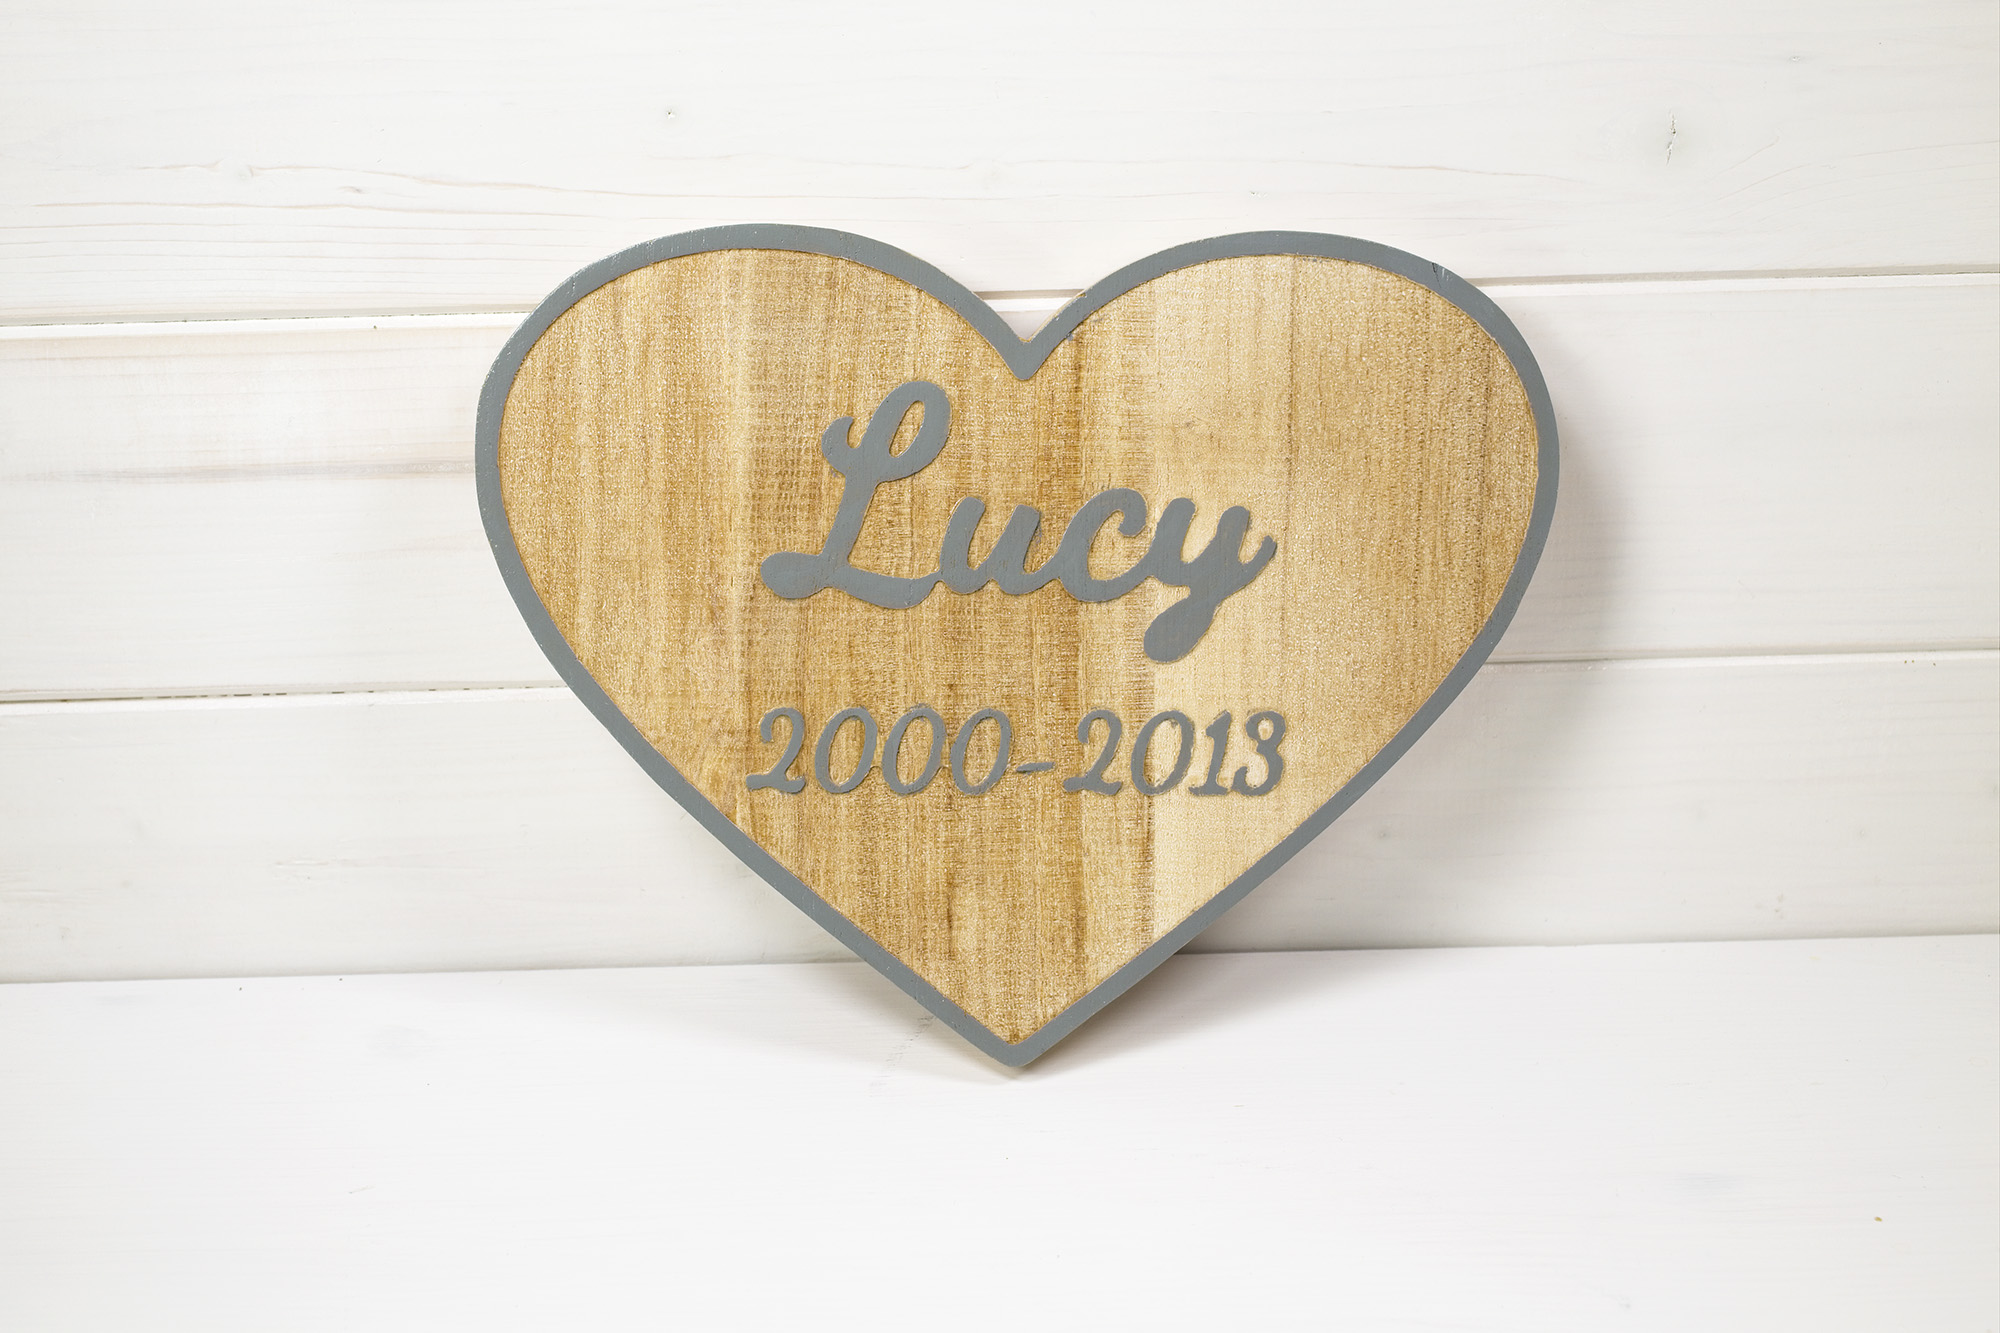 Targa di legno a forma di cuore ricorrenza cane Lucy